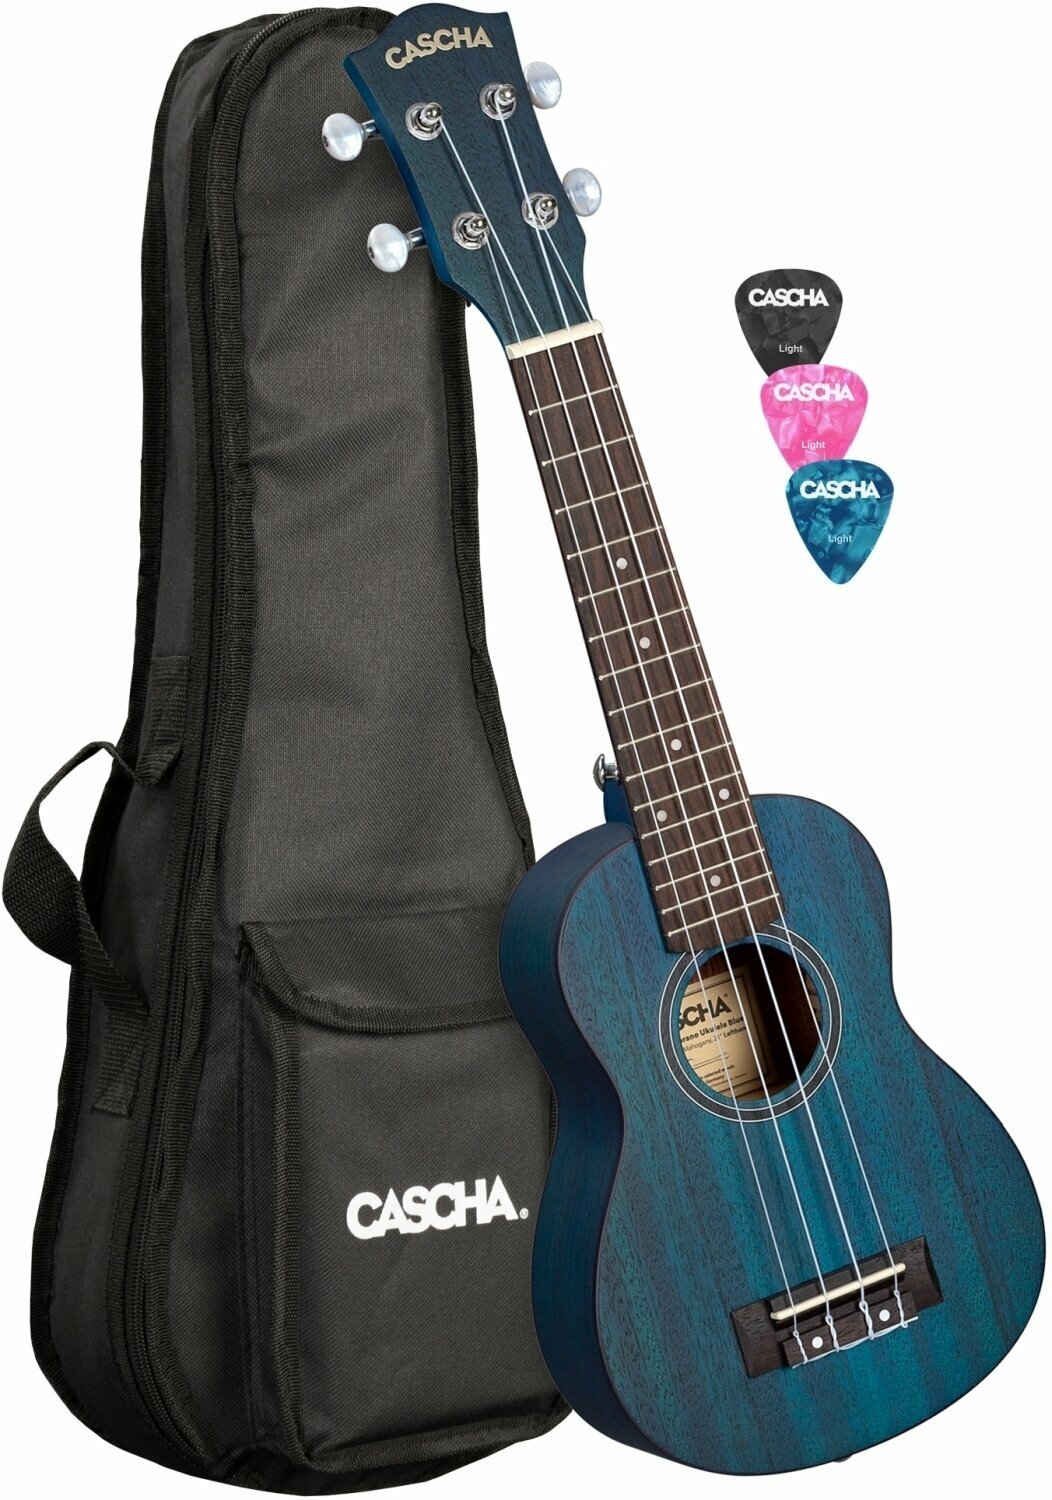 Soprano ukulele Cascha HH 2266L Soprano ukulele Blue